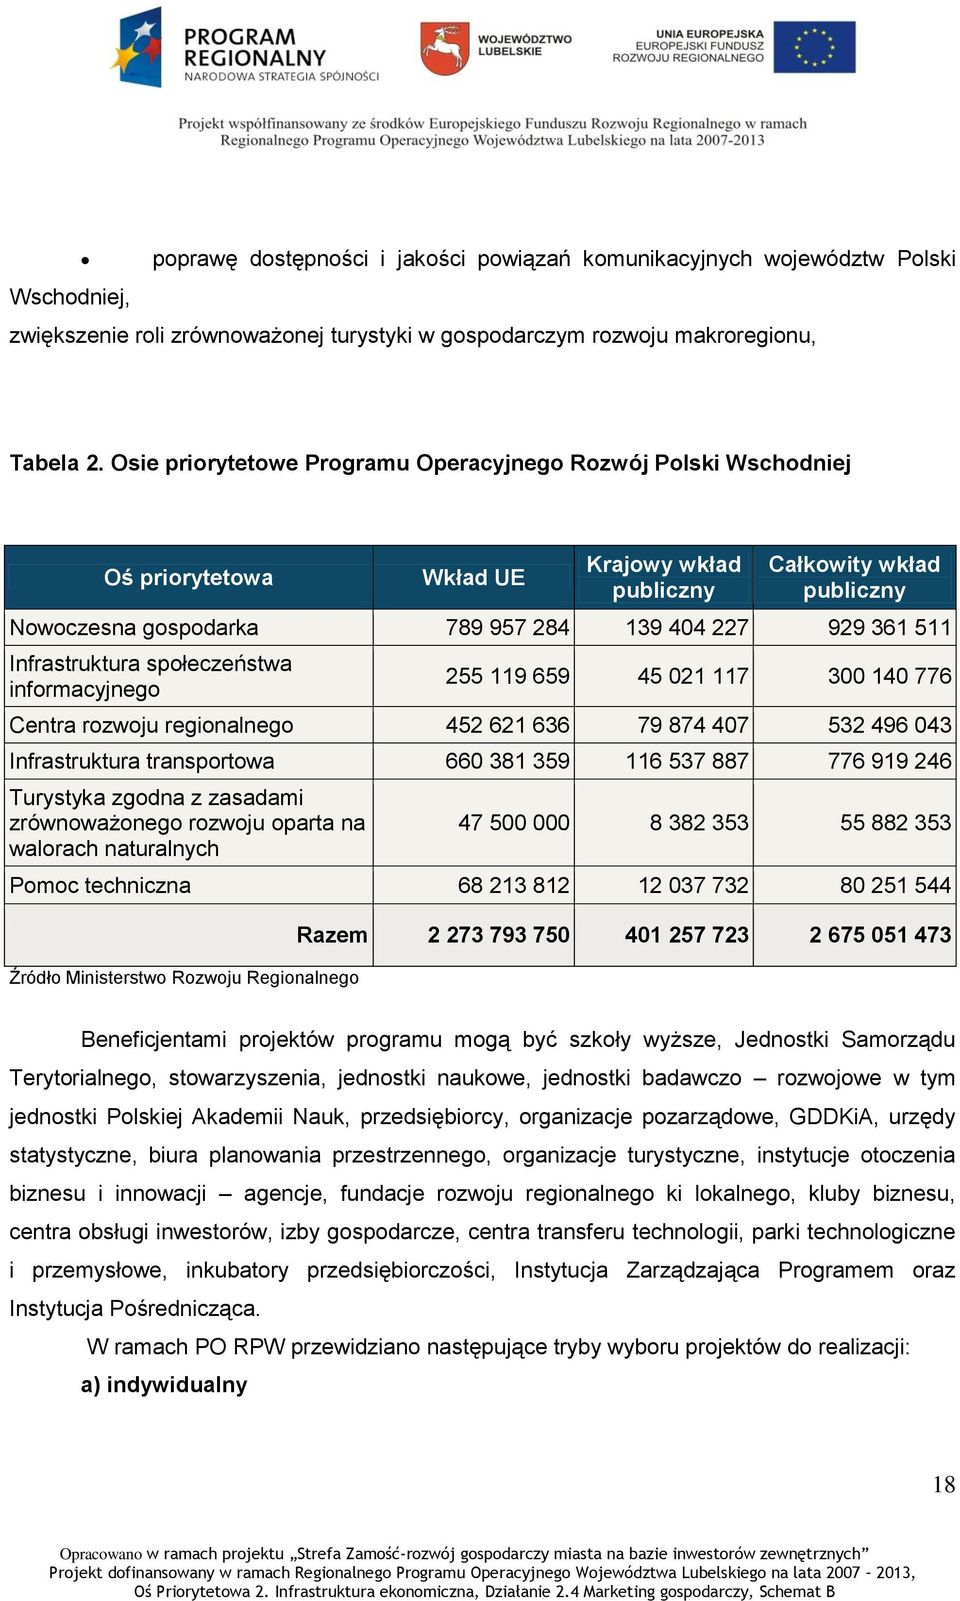 Oś Osie Krajowy wkład Całkowity wkład priorytetowa priorytetowe Programu Wkład Operacyjnego UE Rozwój Polski Wschodniej publiczny publiczny Nowoczesna gospodarka 789 957 284 139 404 227 929 361 511